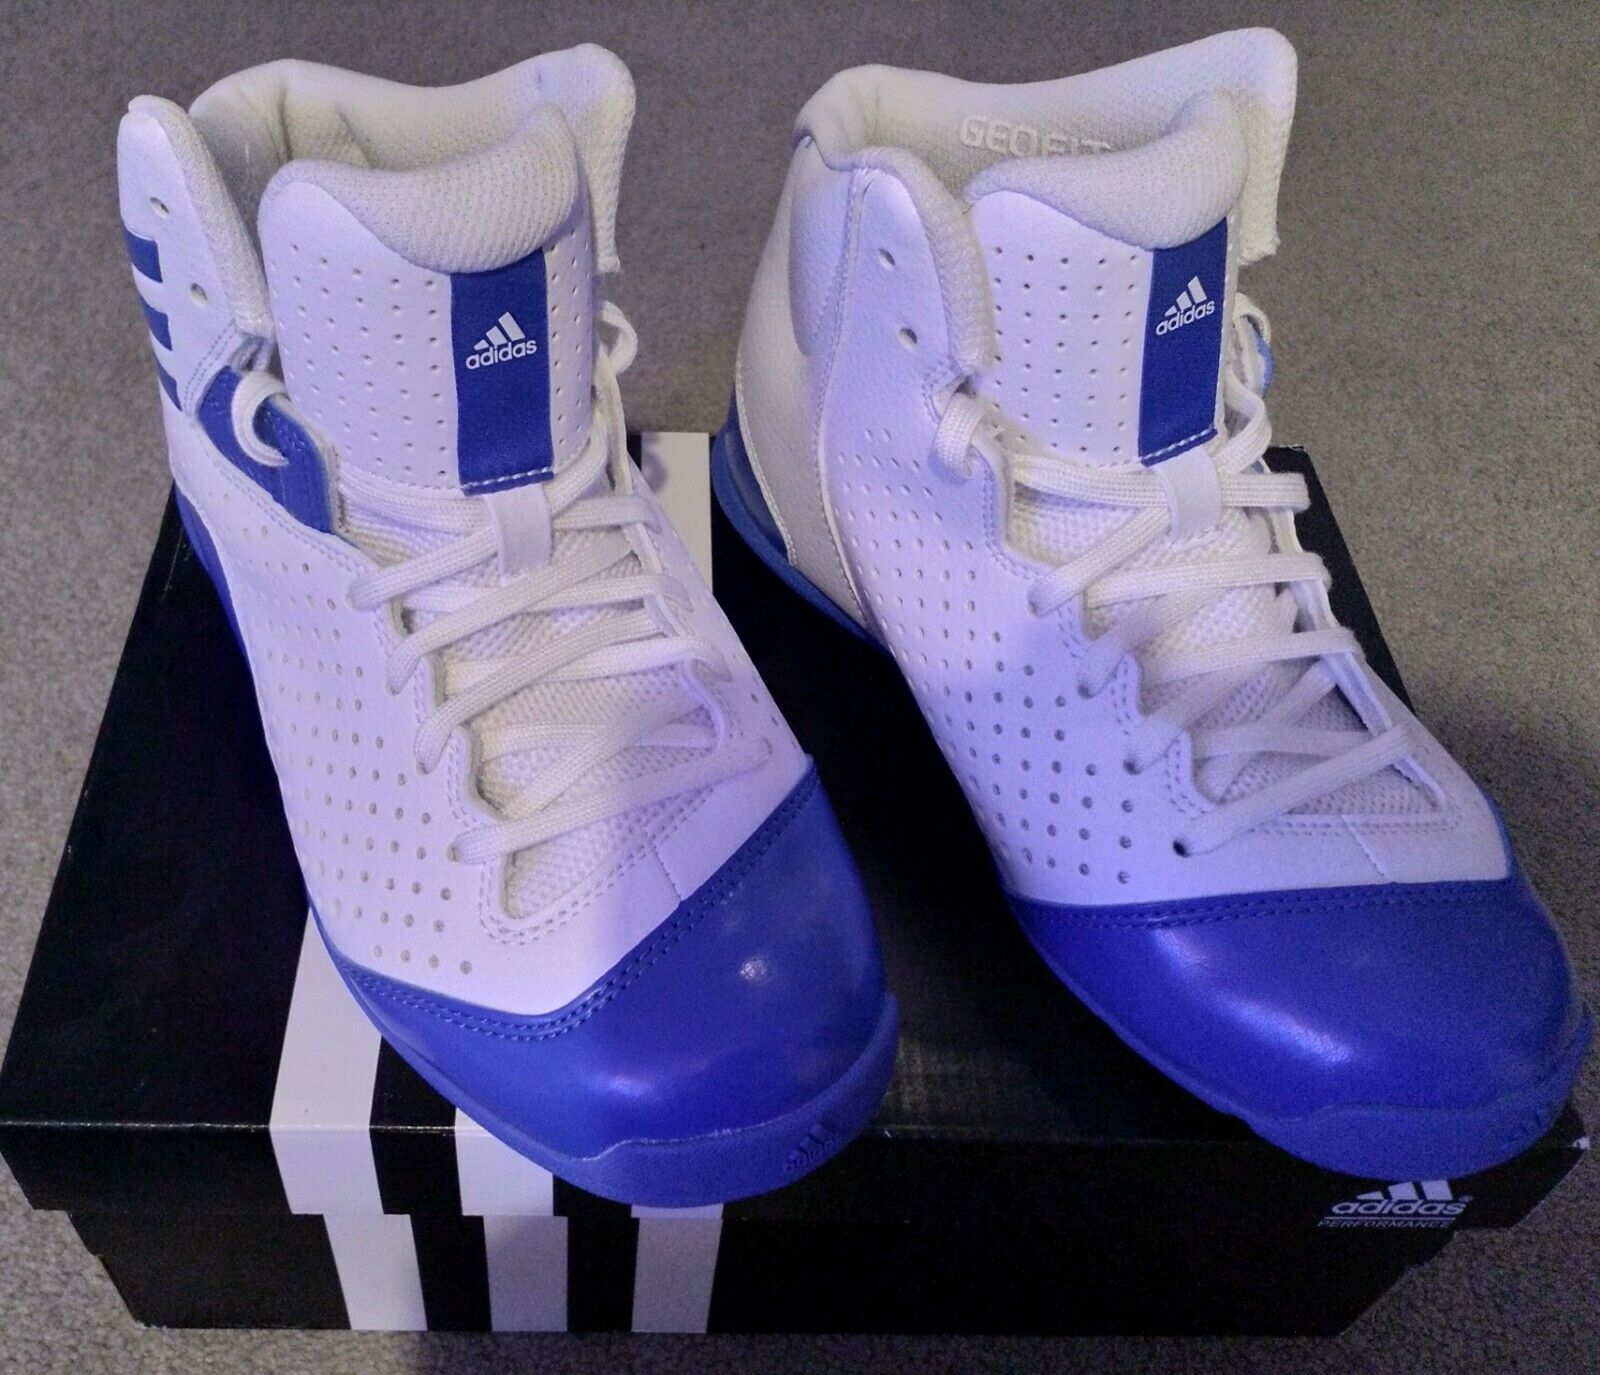 Adidas Performance Next Level Basketball Boots SPD Blue/ White Size 4.5 - UK | eBay